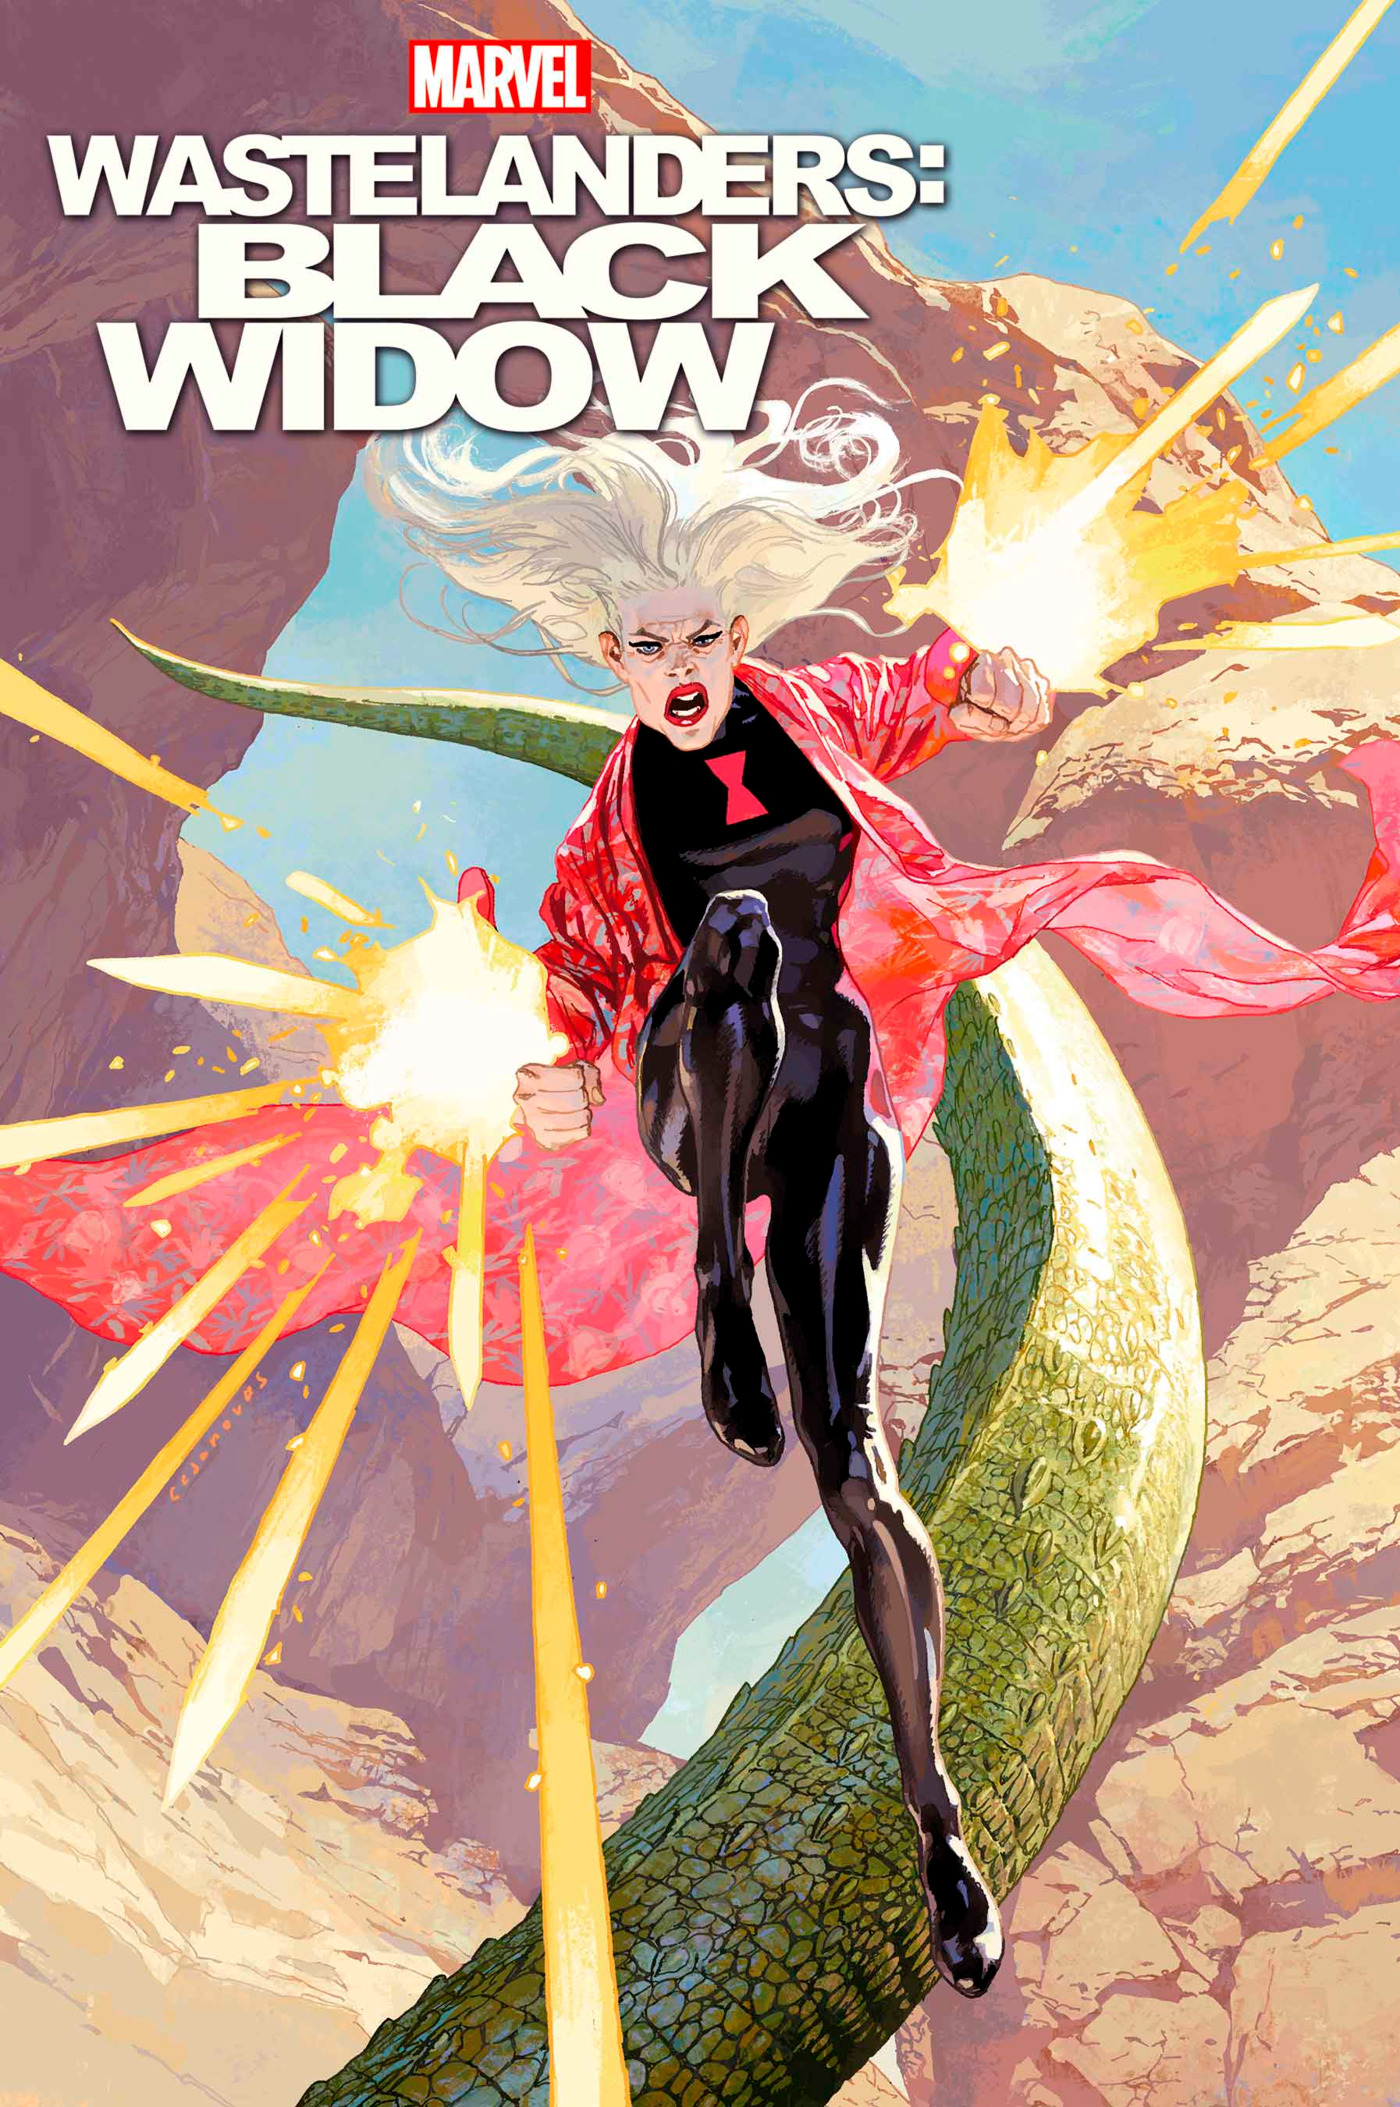 Wastelanders Black Widow #1